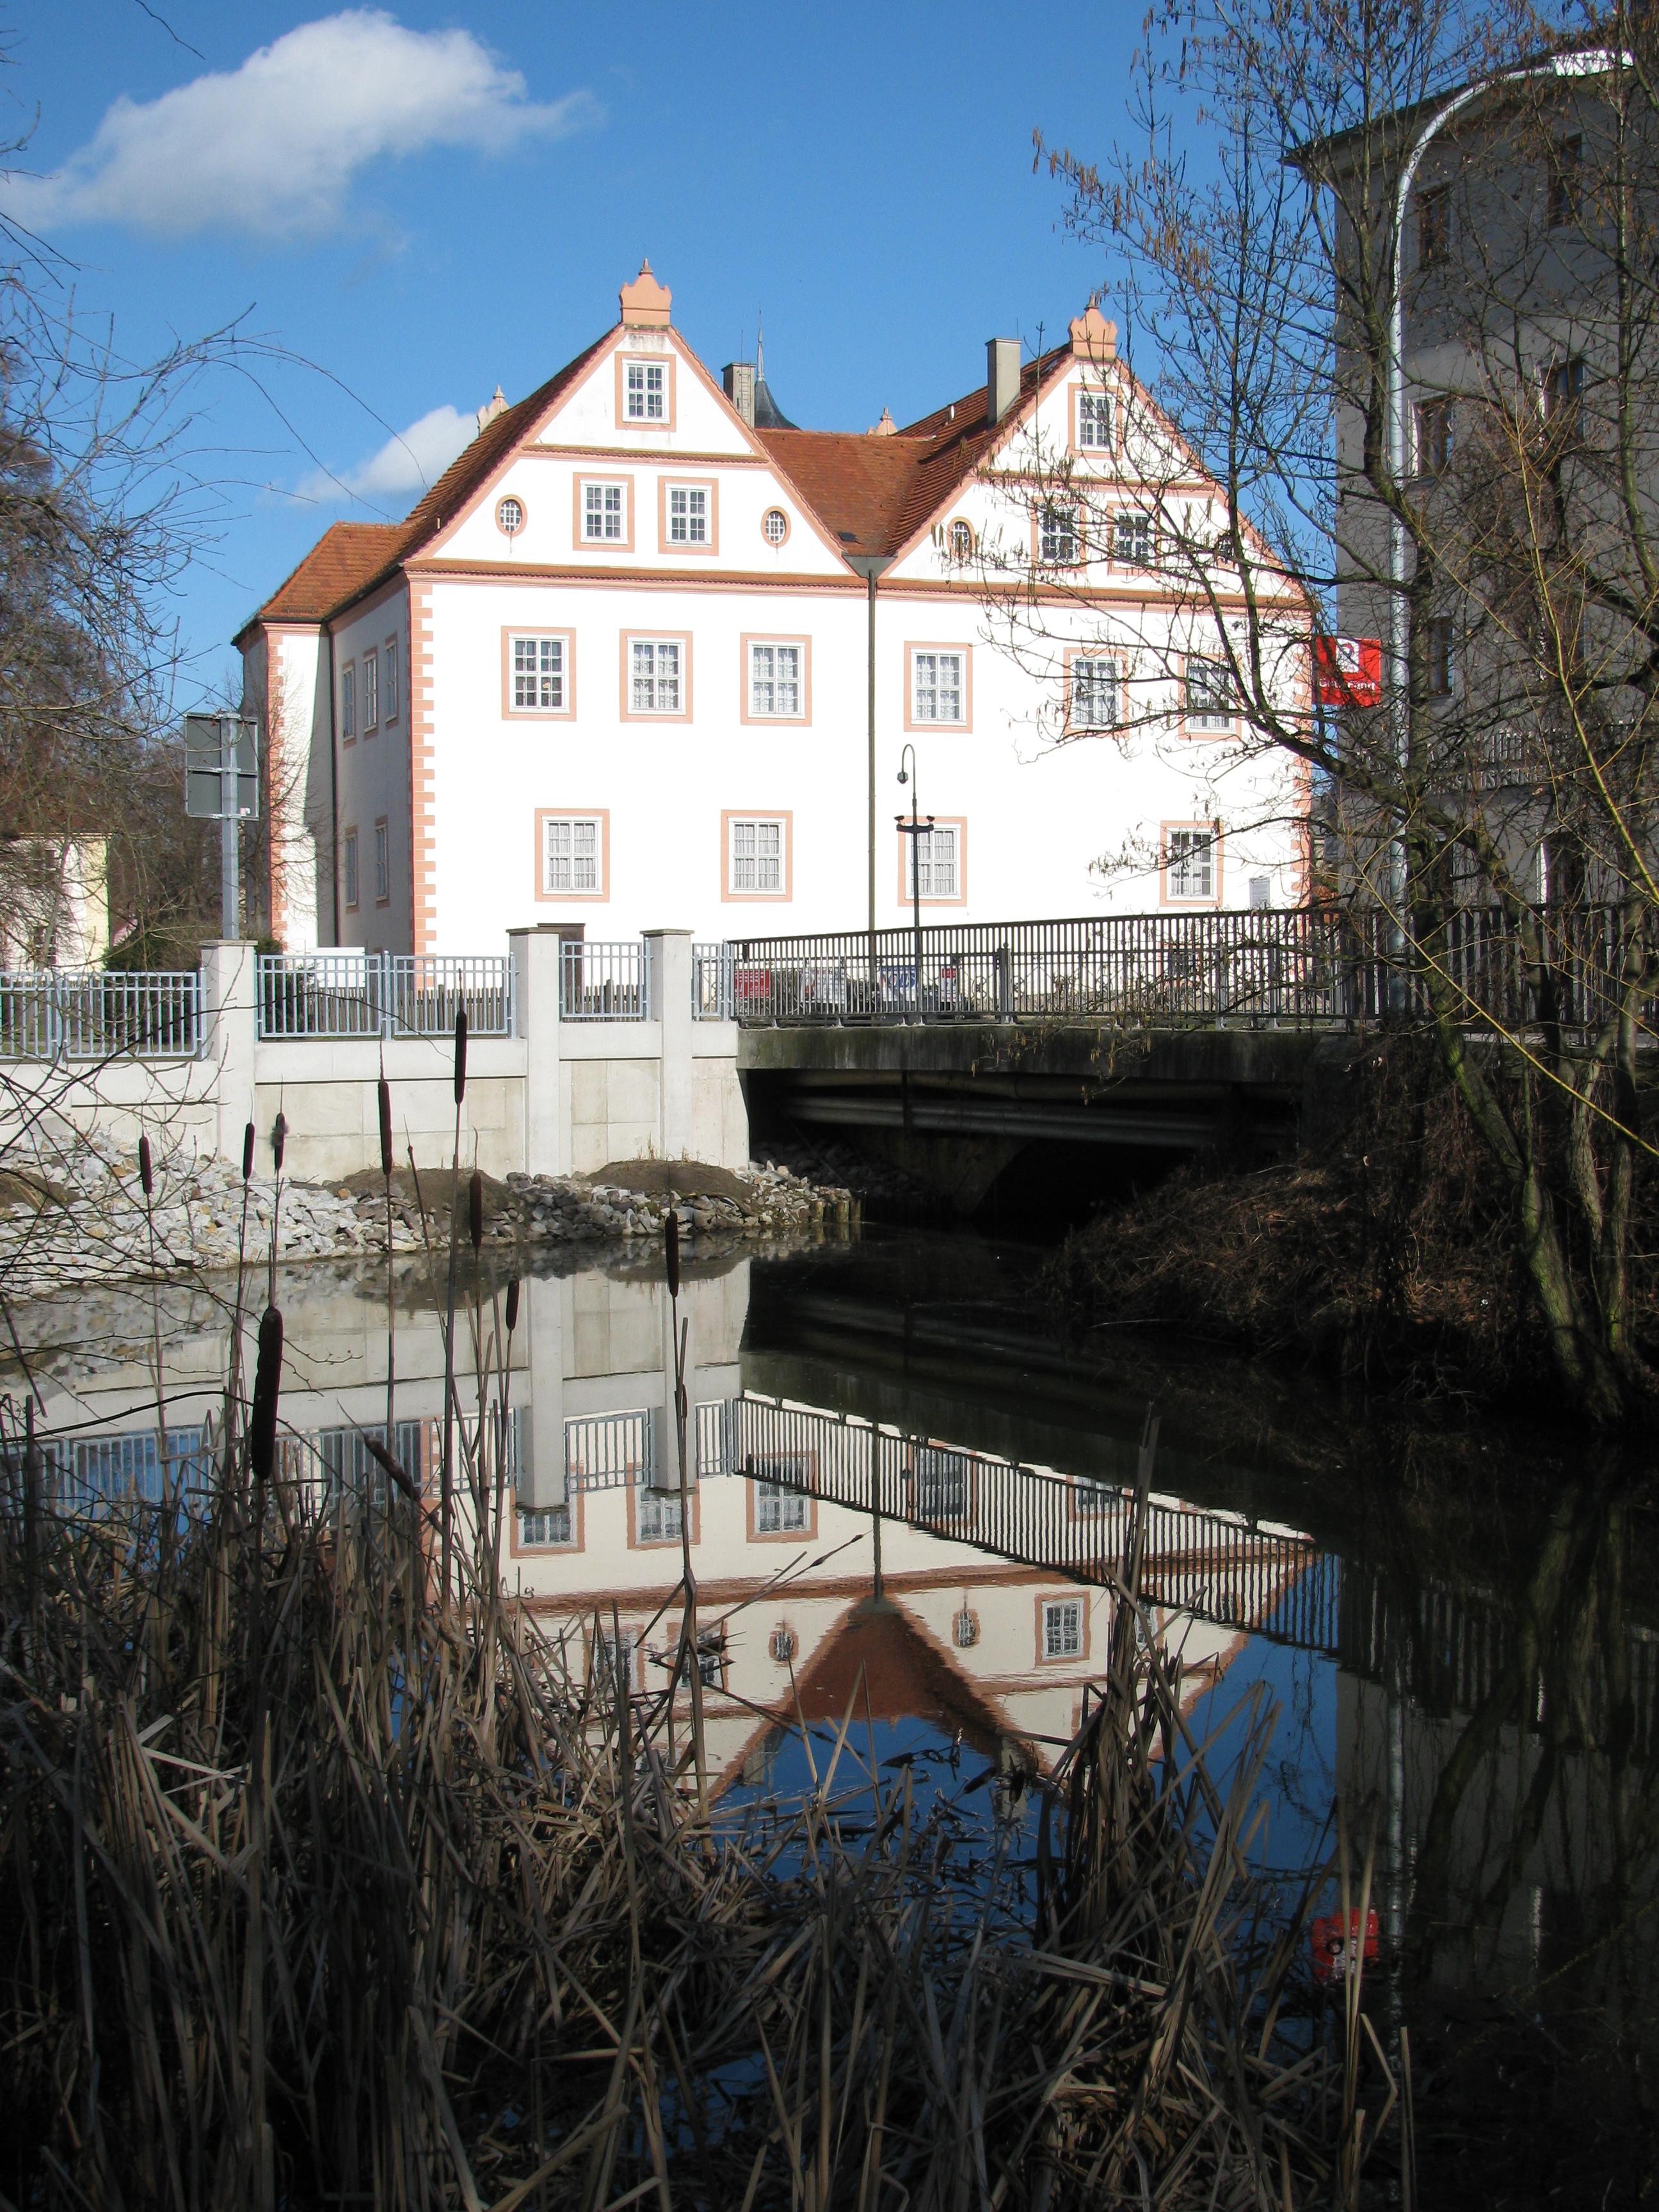 Das Schloss Königs Wusterhausen spiegelt sich hier bei Sonne im Nottekanal (ein Ausläufer des Kanals) im Februar 2014. :)